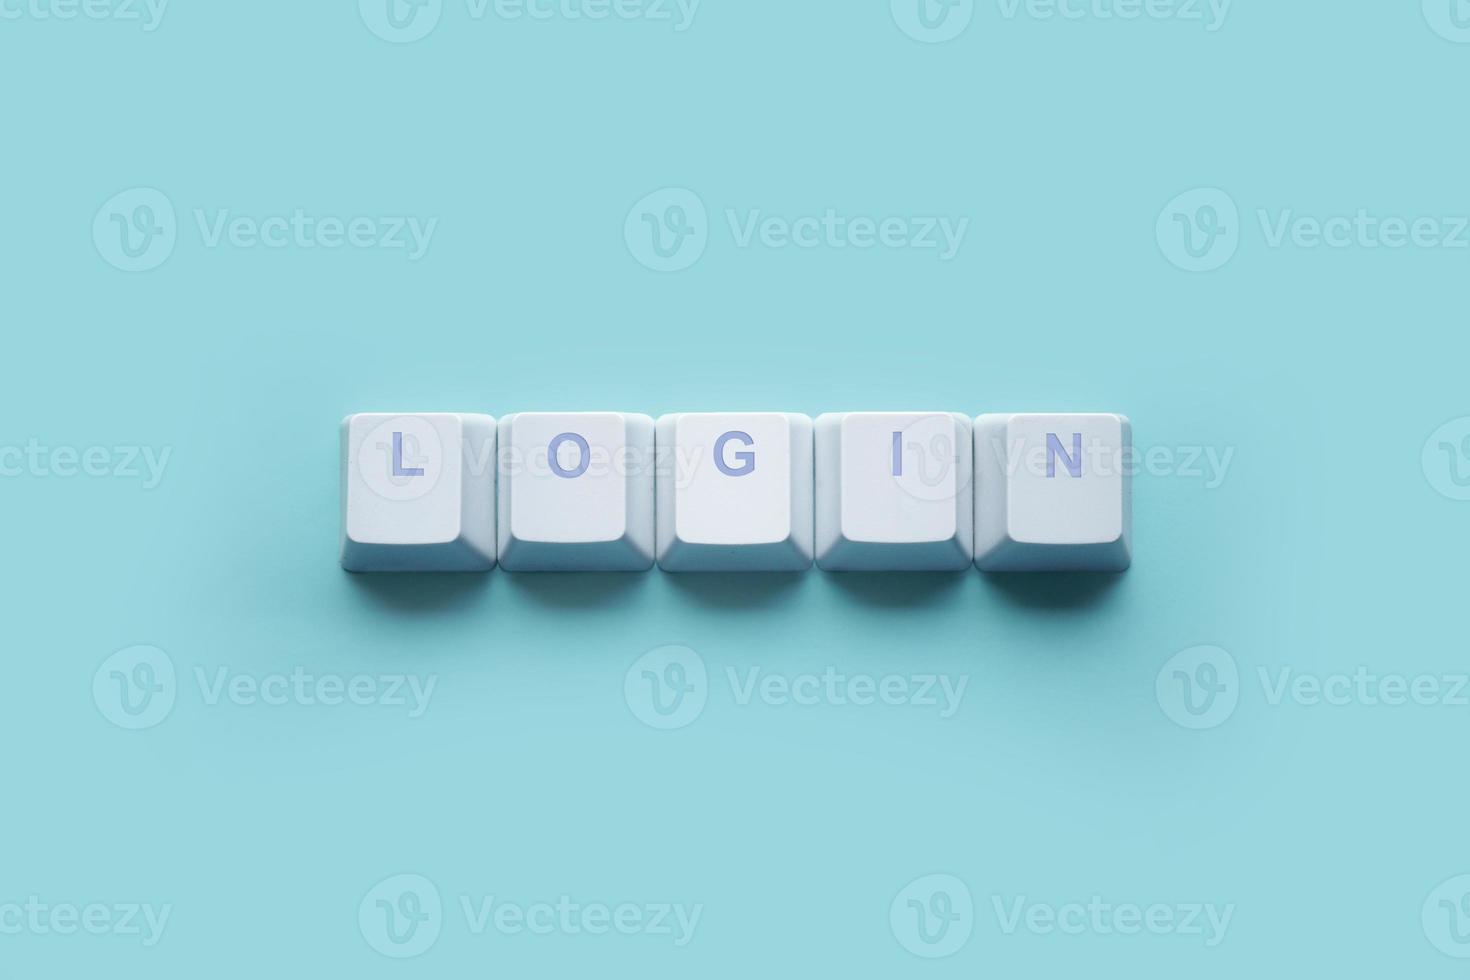 palavra login escrito nas teclas do teclado do computador isoladas em uma turquesa foto